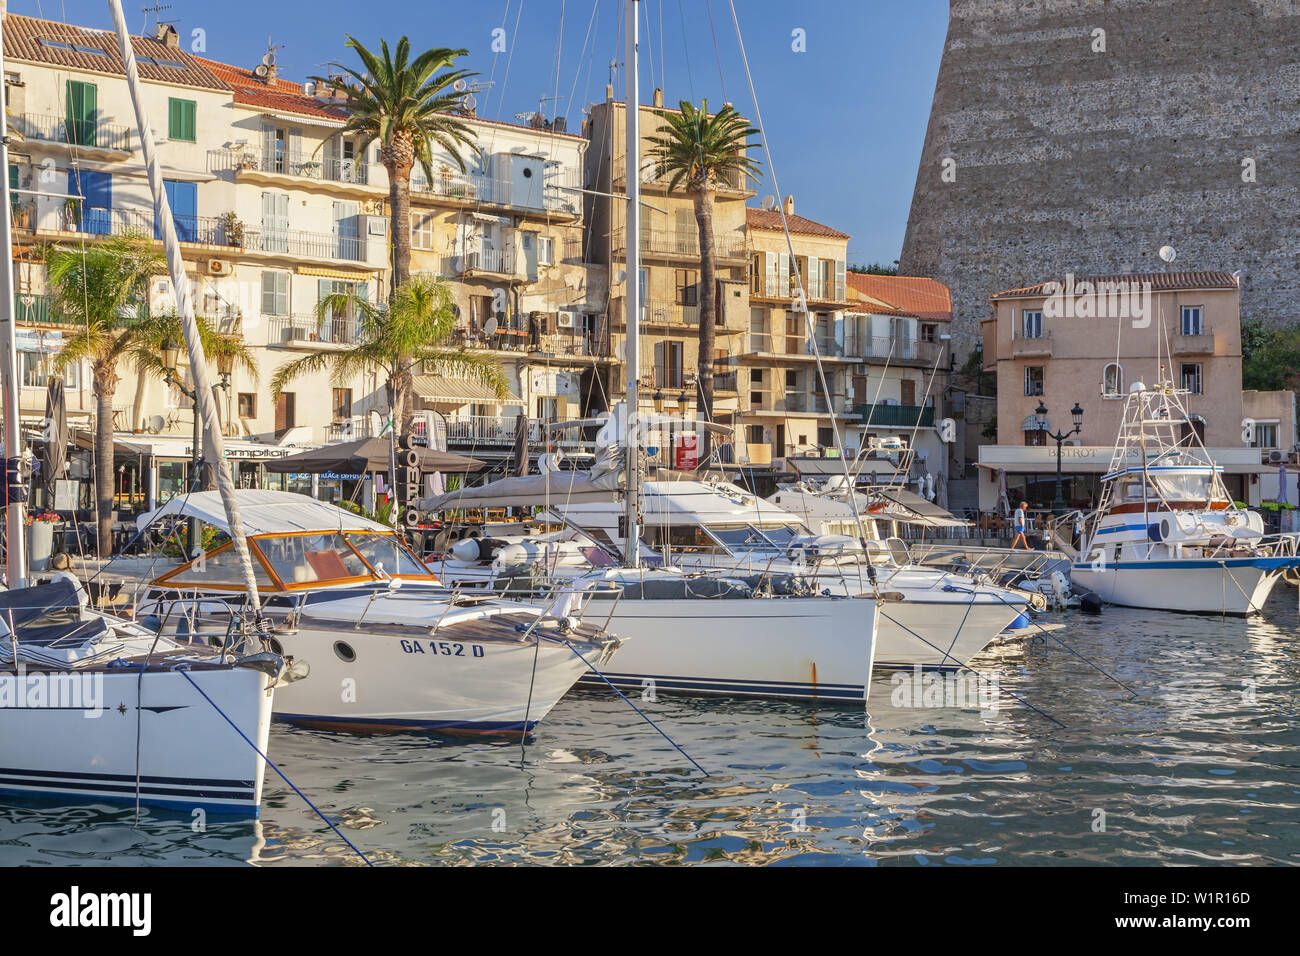 Port de Calvi sous la citadelle, la Corse, le sud de la France, France, Europe du Sud Banque D'Images